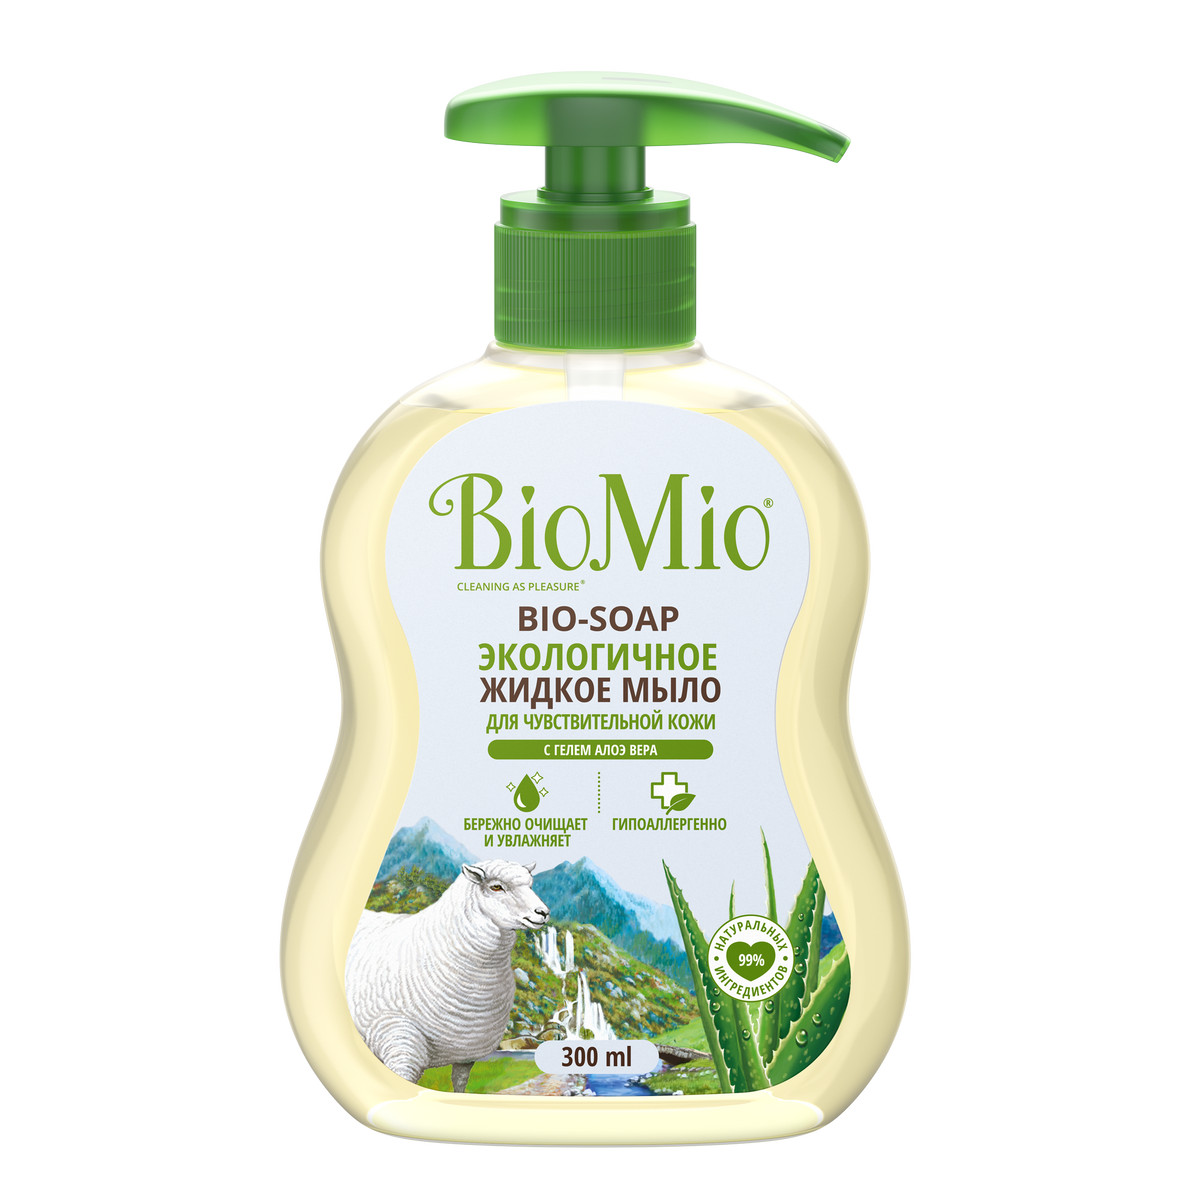 Экологичное жидкое мыло BioMio® BIO-SOAP